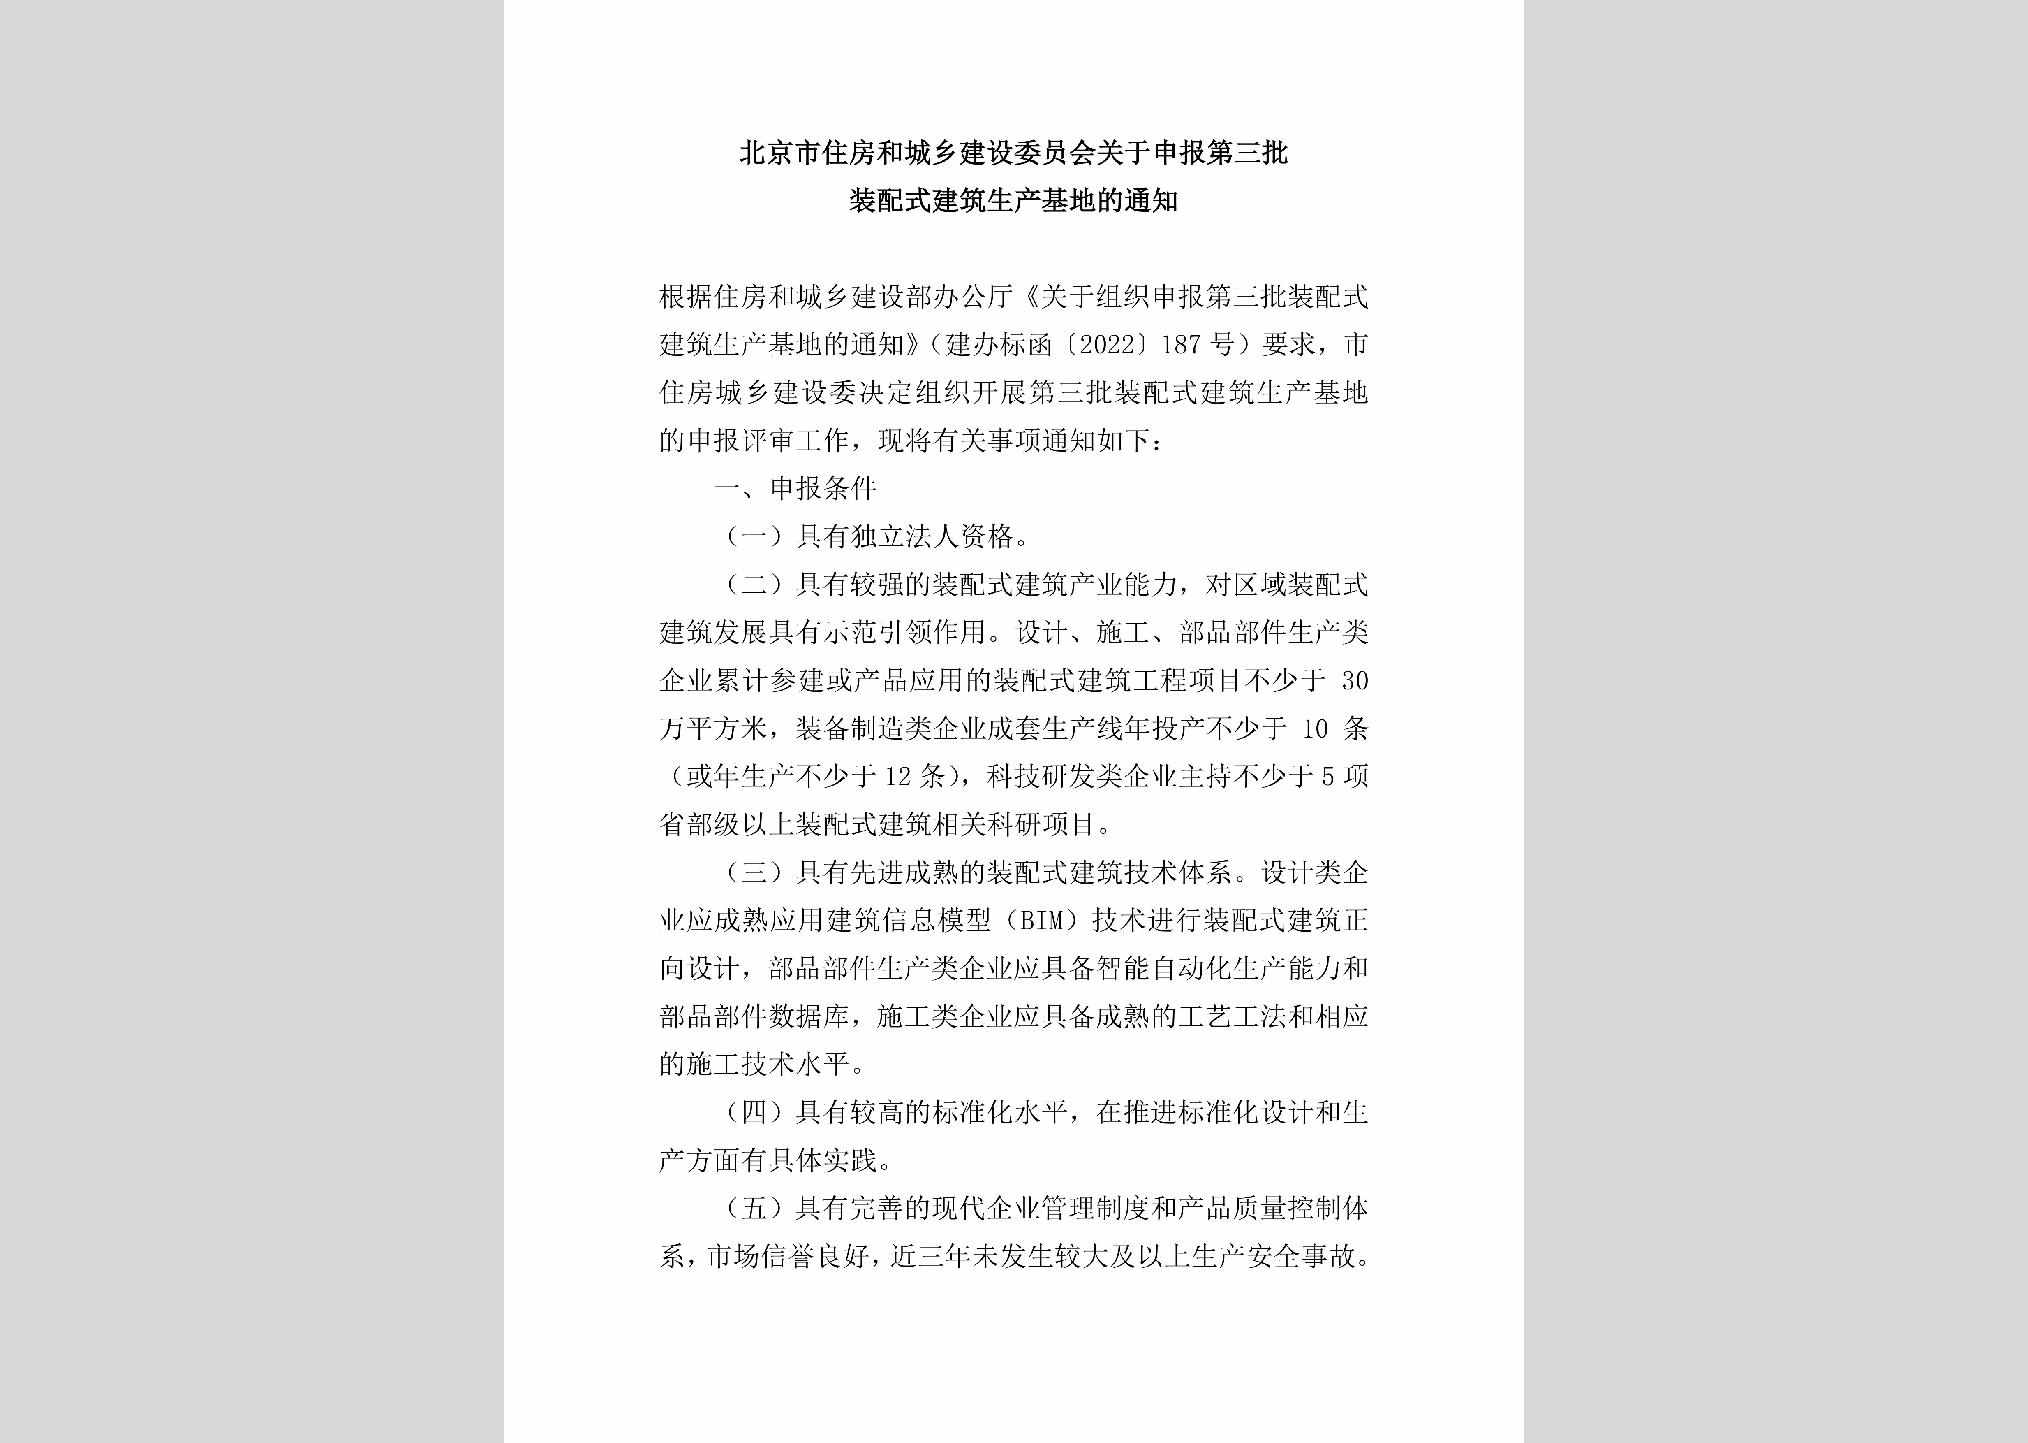 BJ-ZPSJZSCJD-2022：北京市住房和城乡建设委员会关于申报第三批装配式建筑生产基地的通知